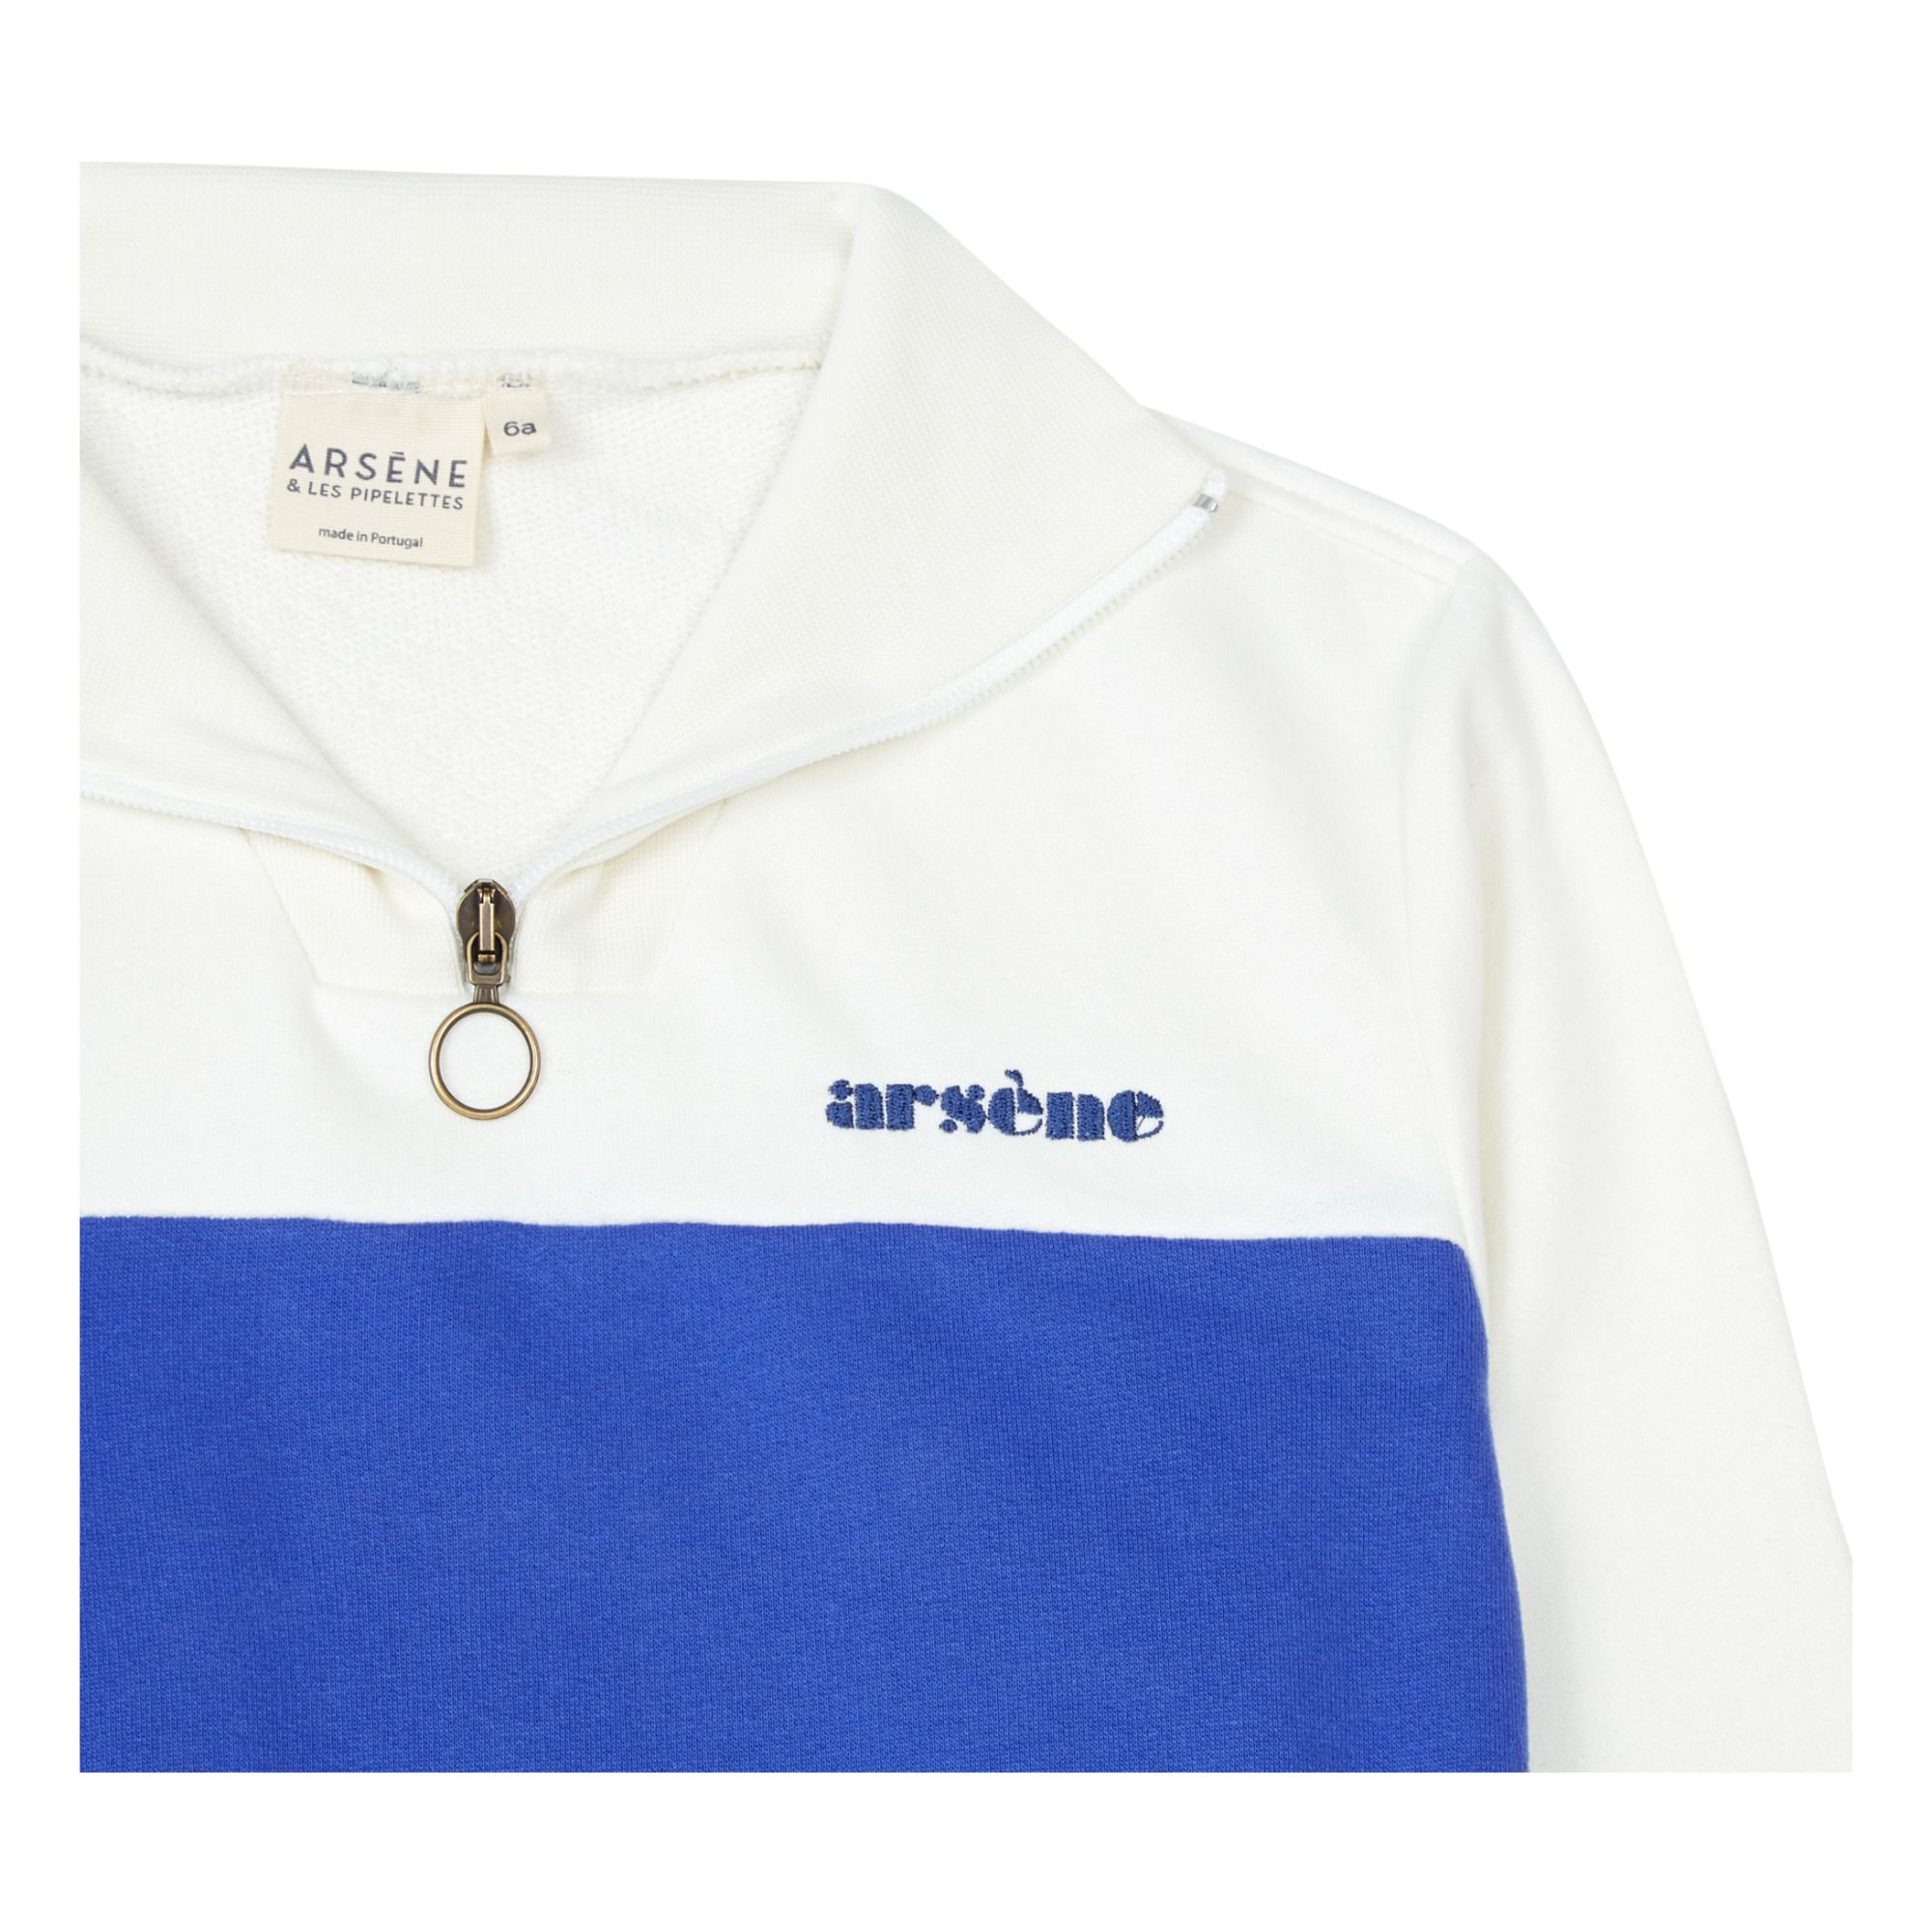 Les Sweatshirt Arsène - Cotton Organic - Pipelettes Smallable blue et Djiby Electric |